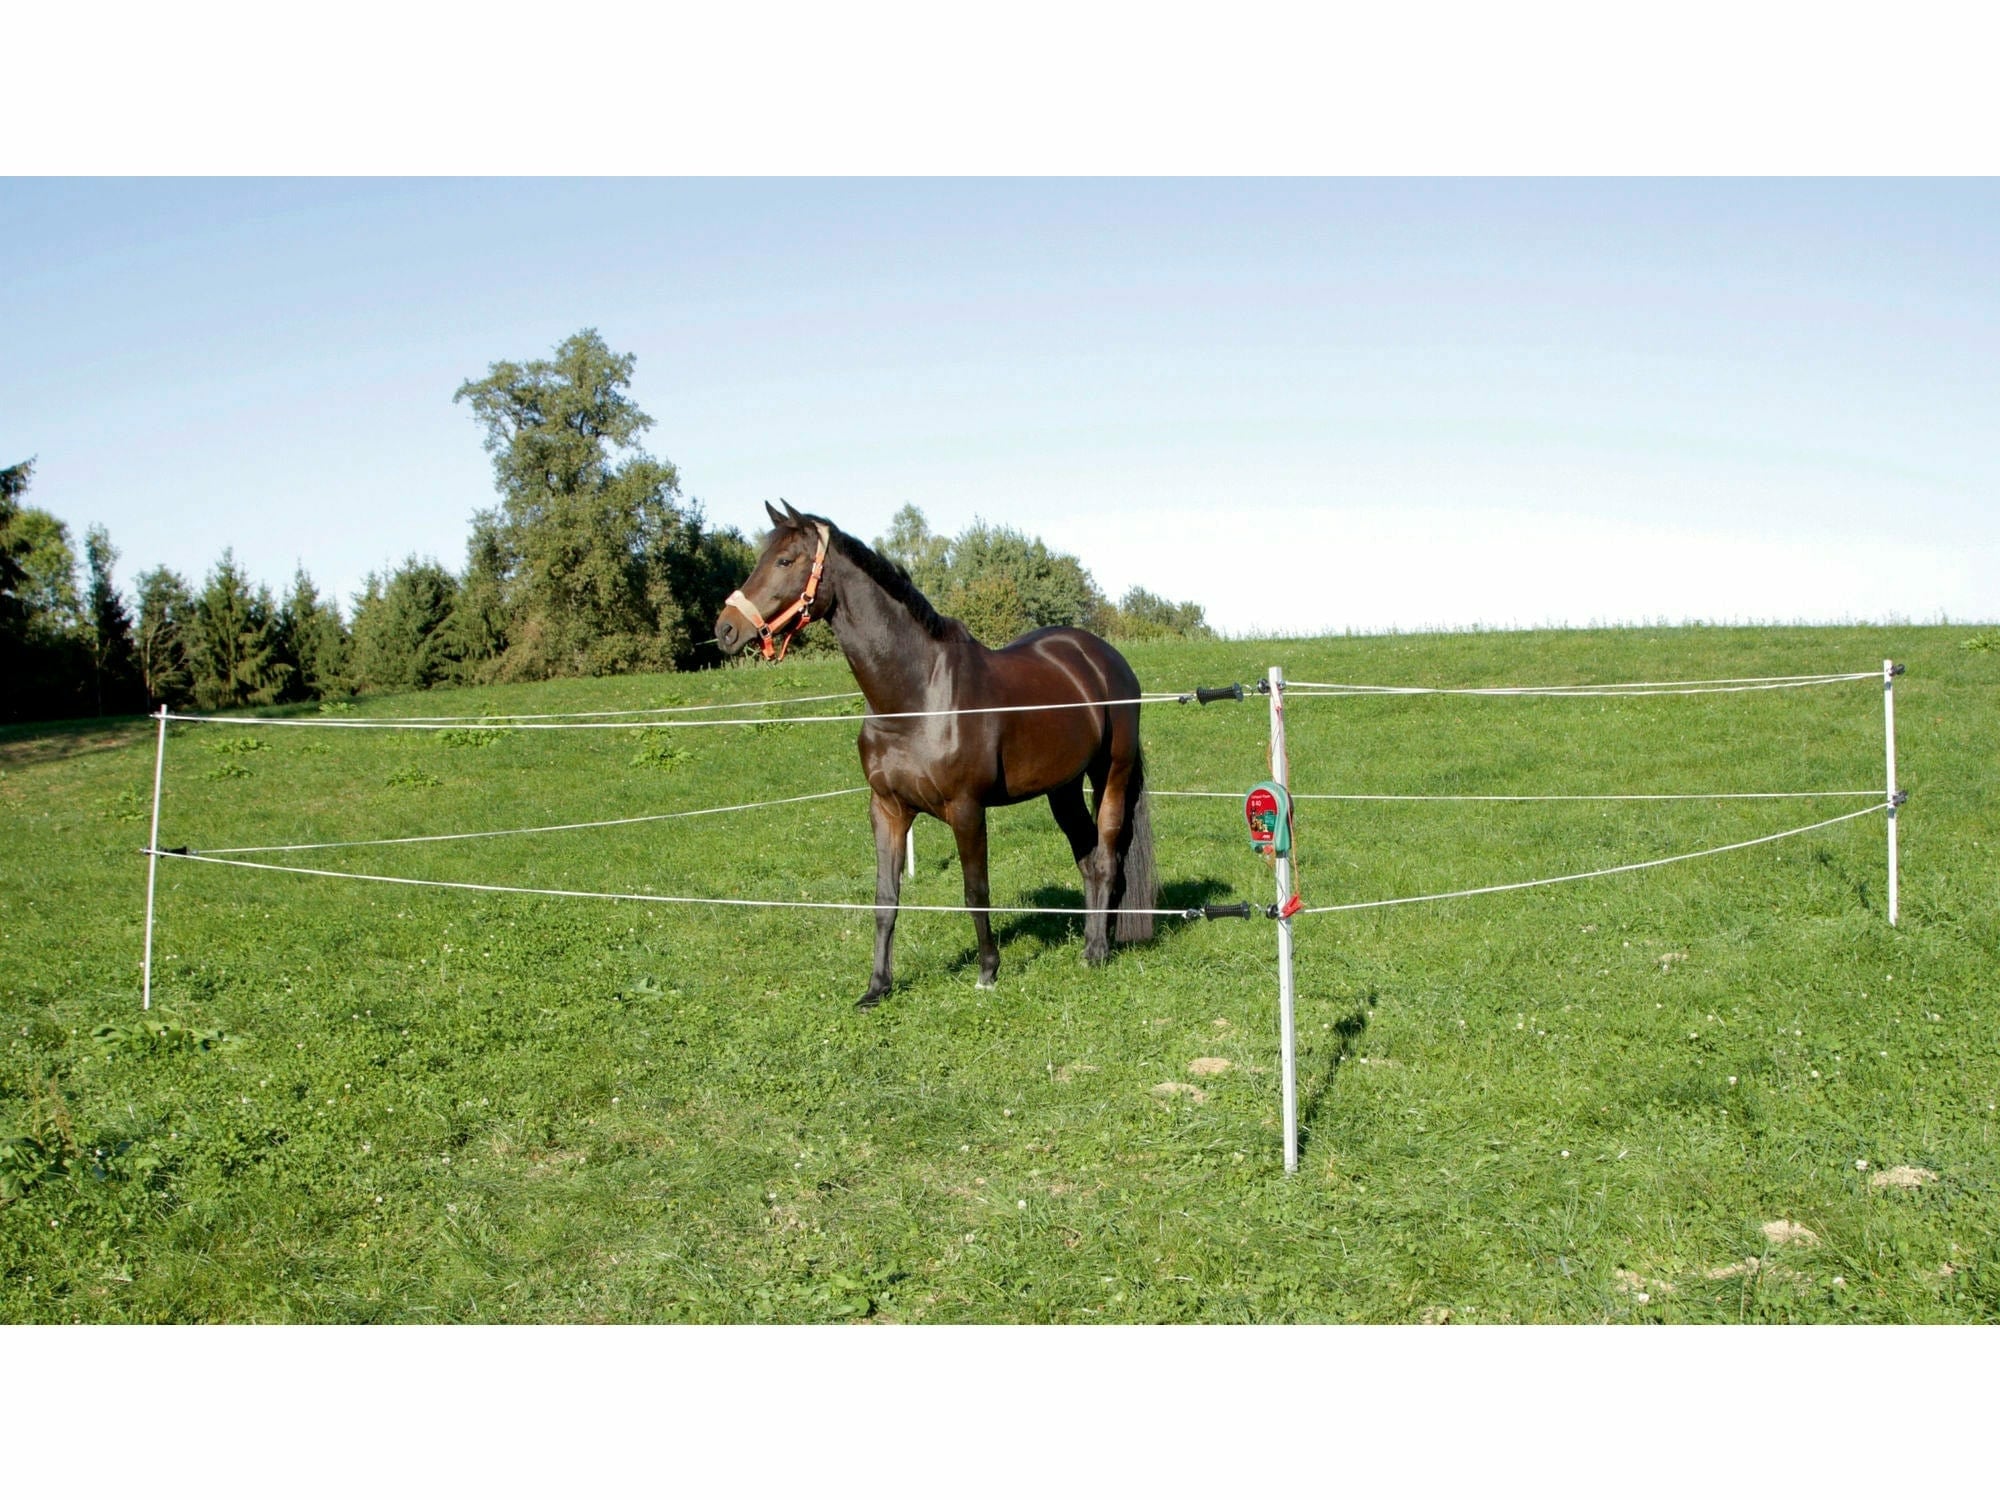 Tournoi/enclos de chevaux islandais 7 x 7 m, avec escrimeur électrique